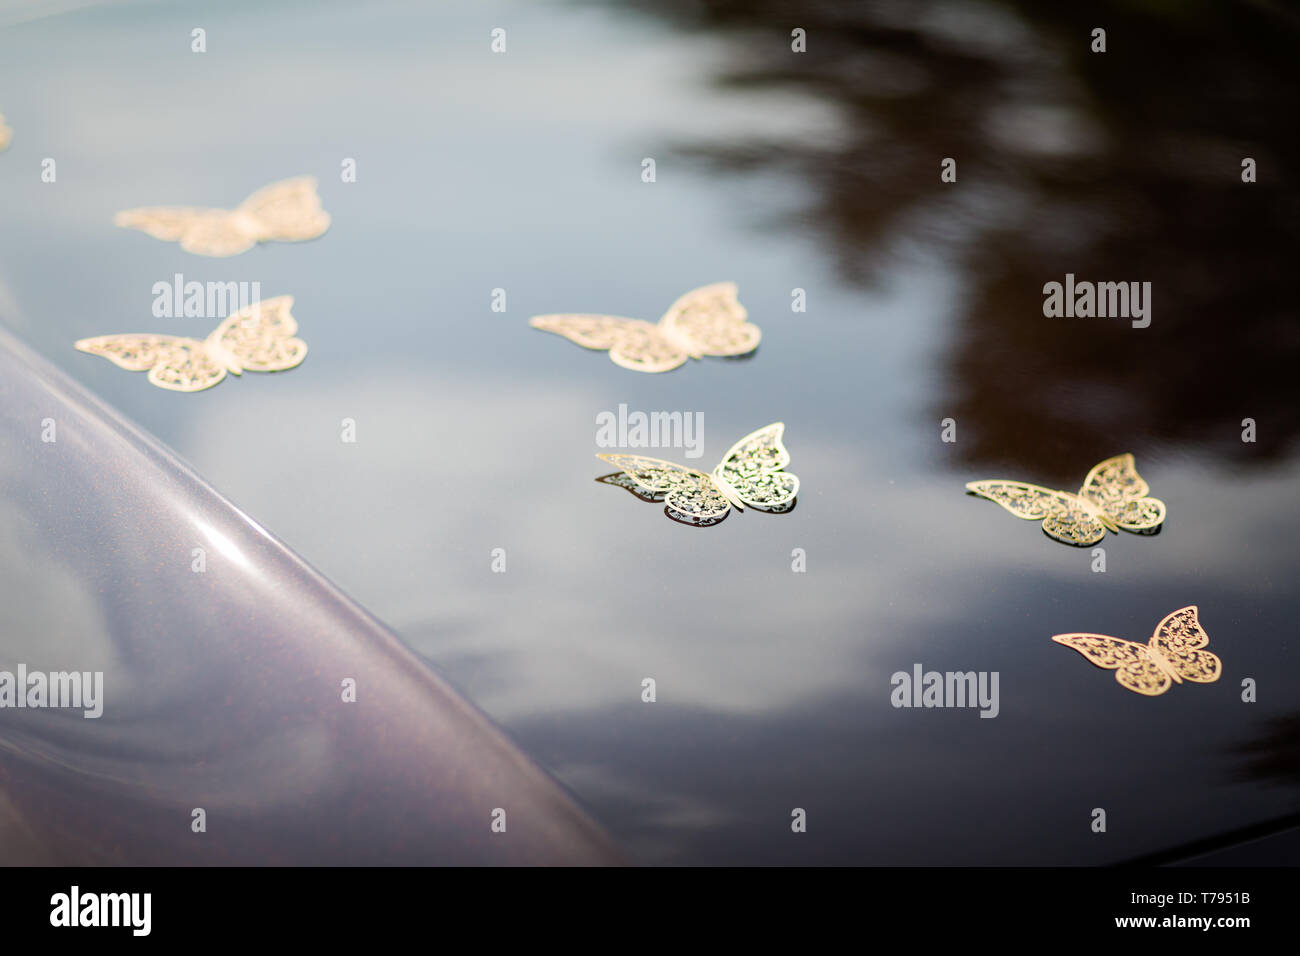 Hochzeit Detail - schönes Auto Dekoration aus Schmetterlinge  Stockfotografie - Alamy